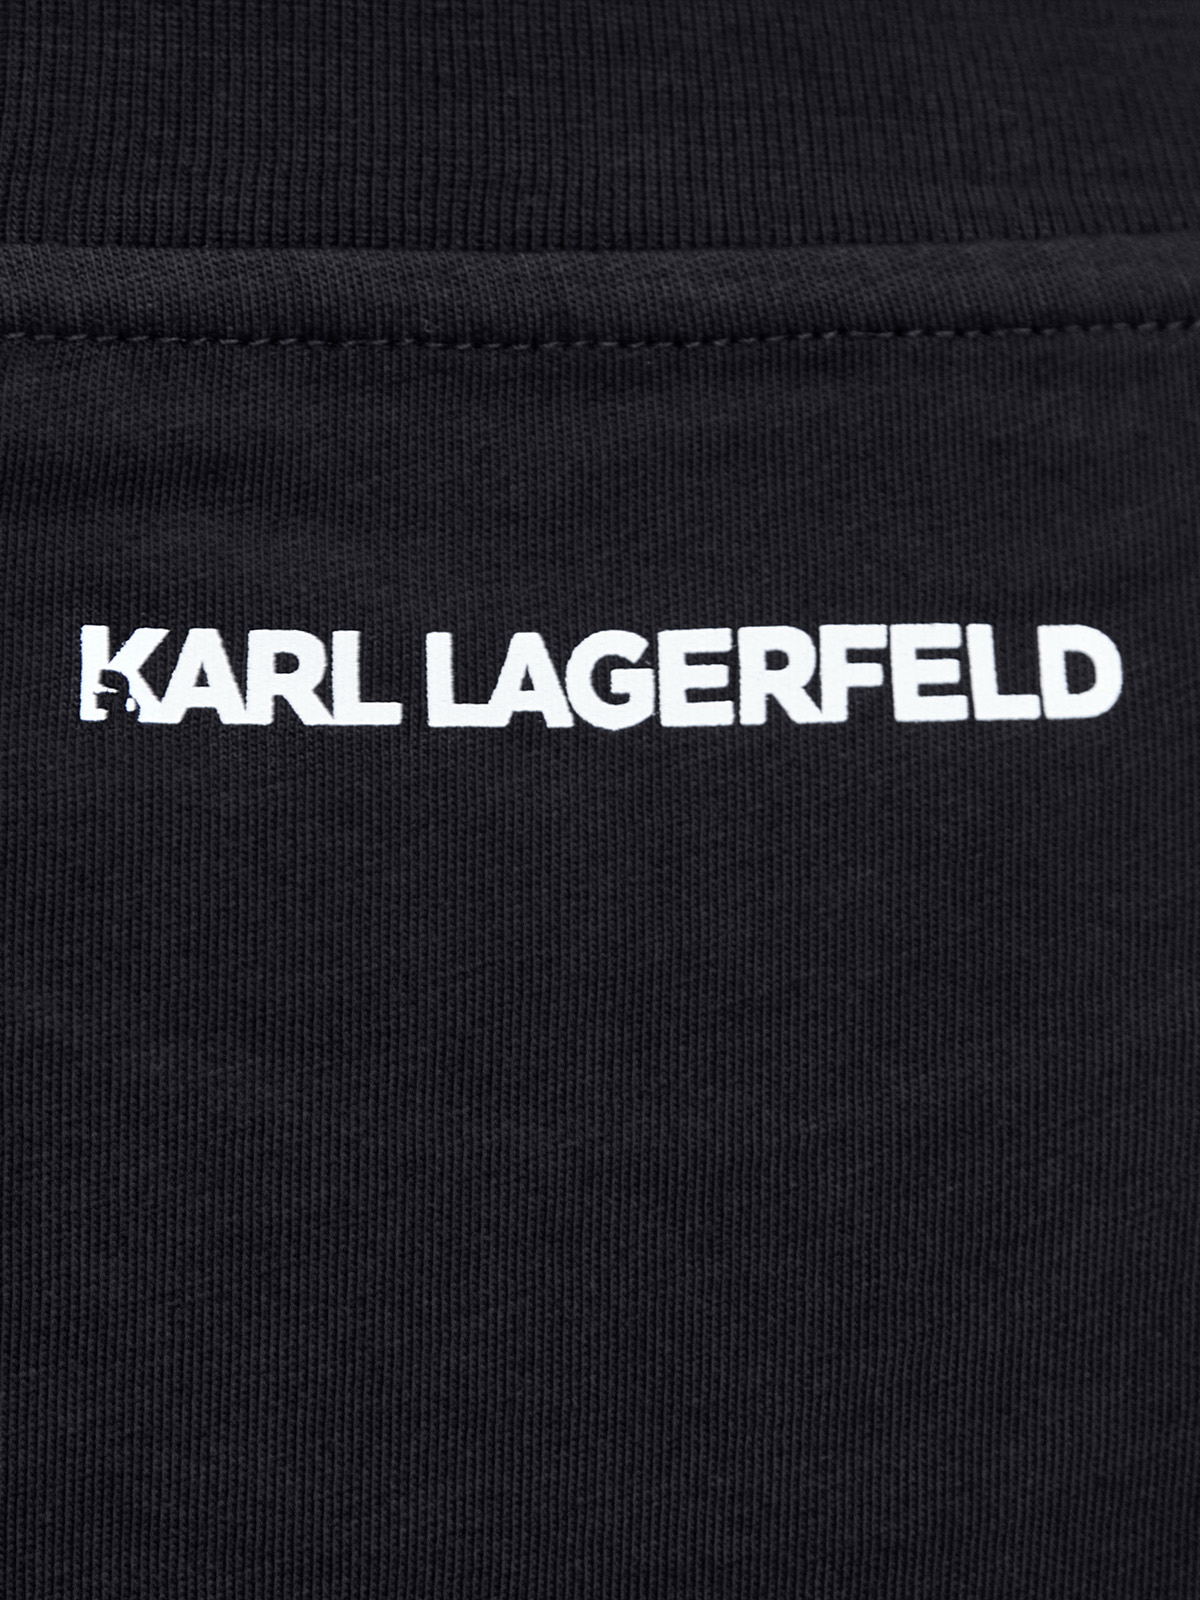 Кроп-футболка в университетском стиле с контрастным принтом KARL LAGERFELD, цвет черный, размер S;M - фото 5